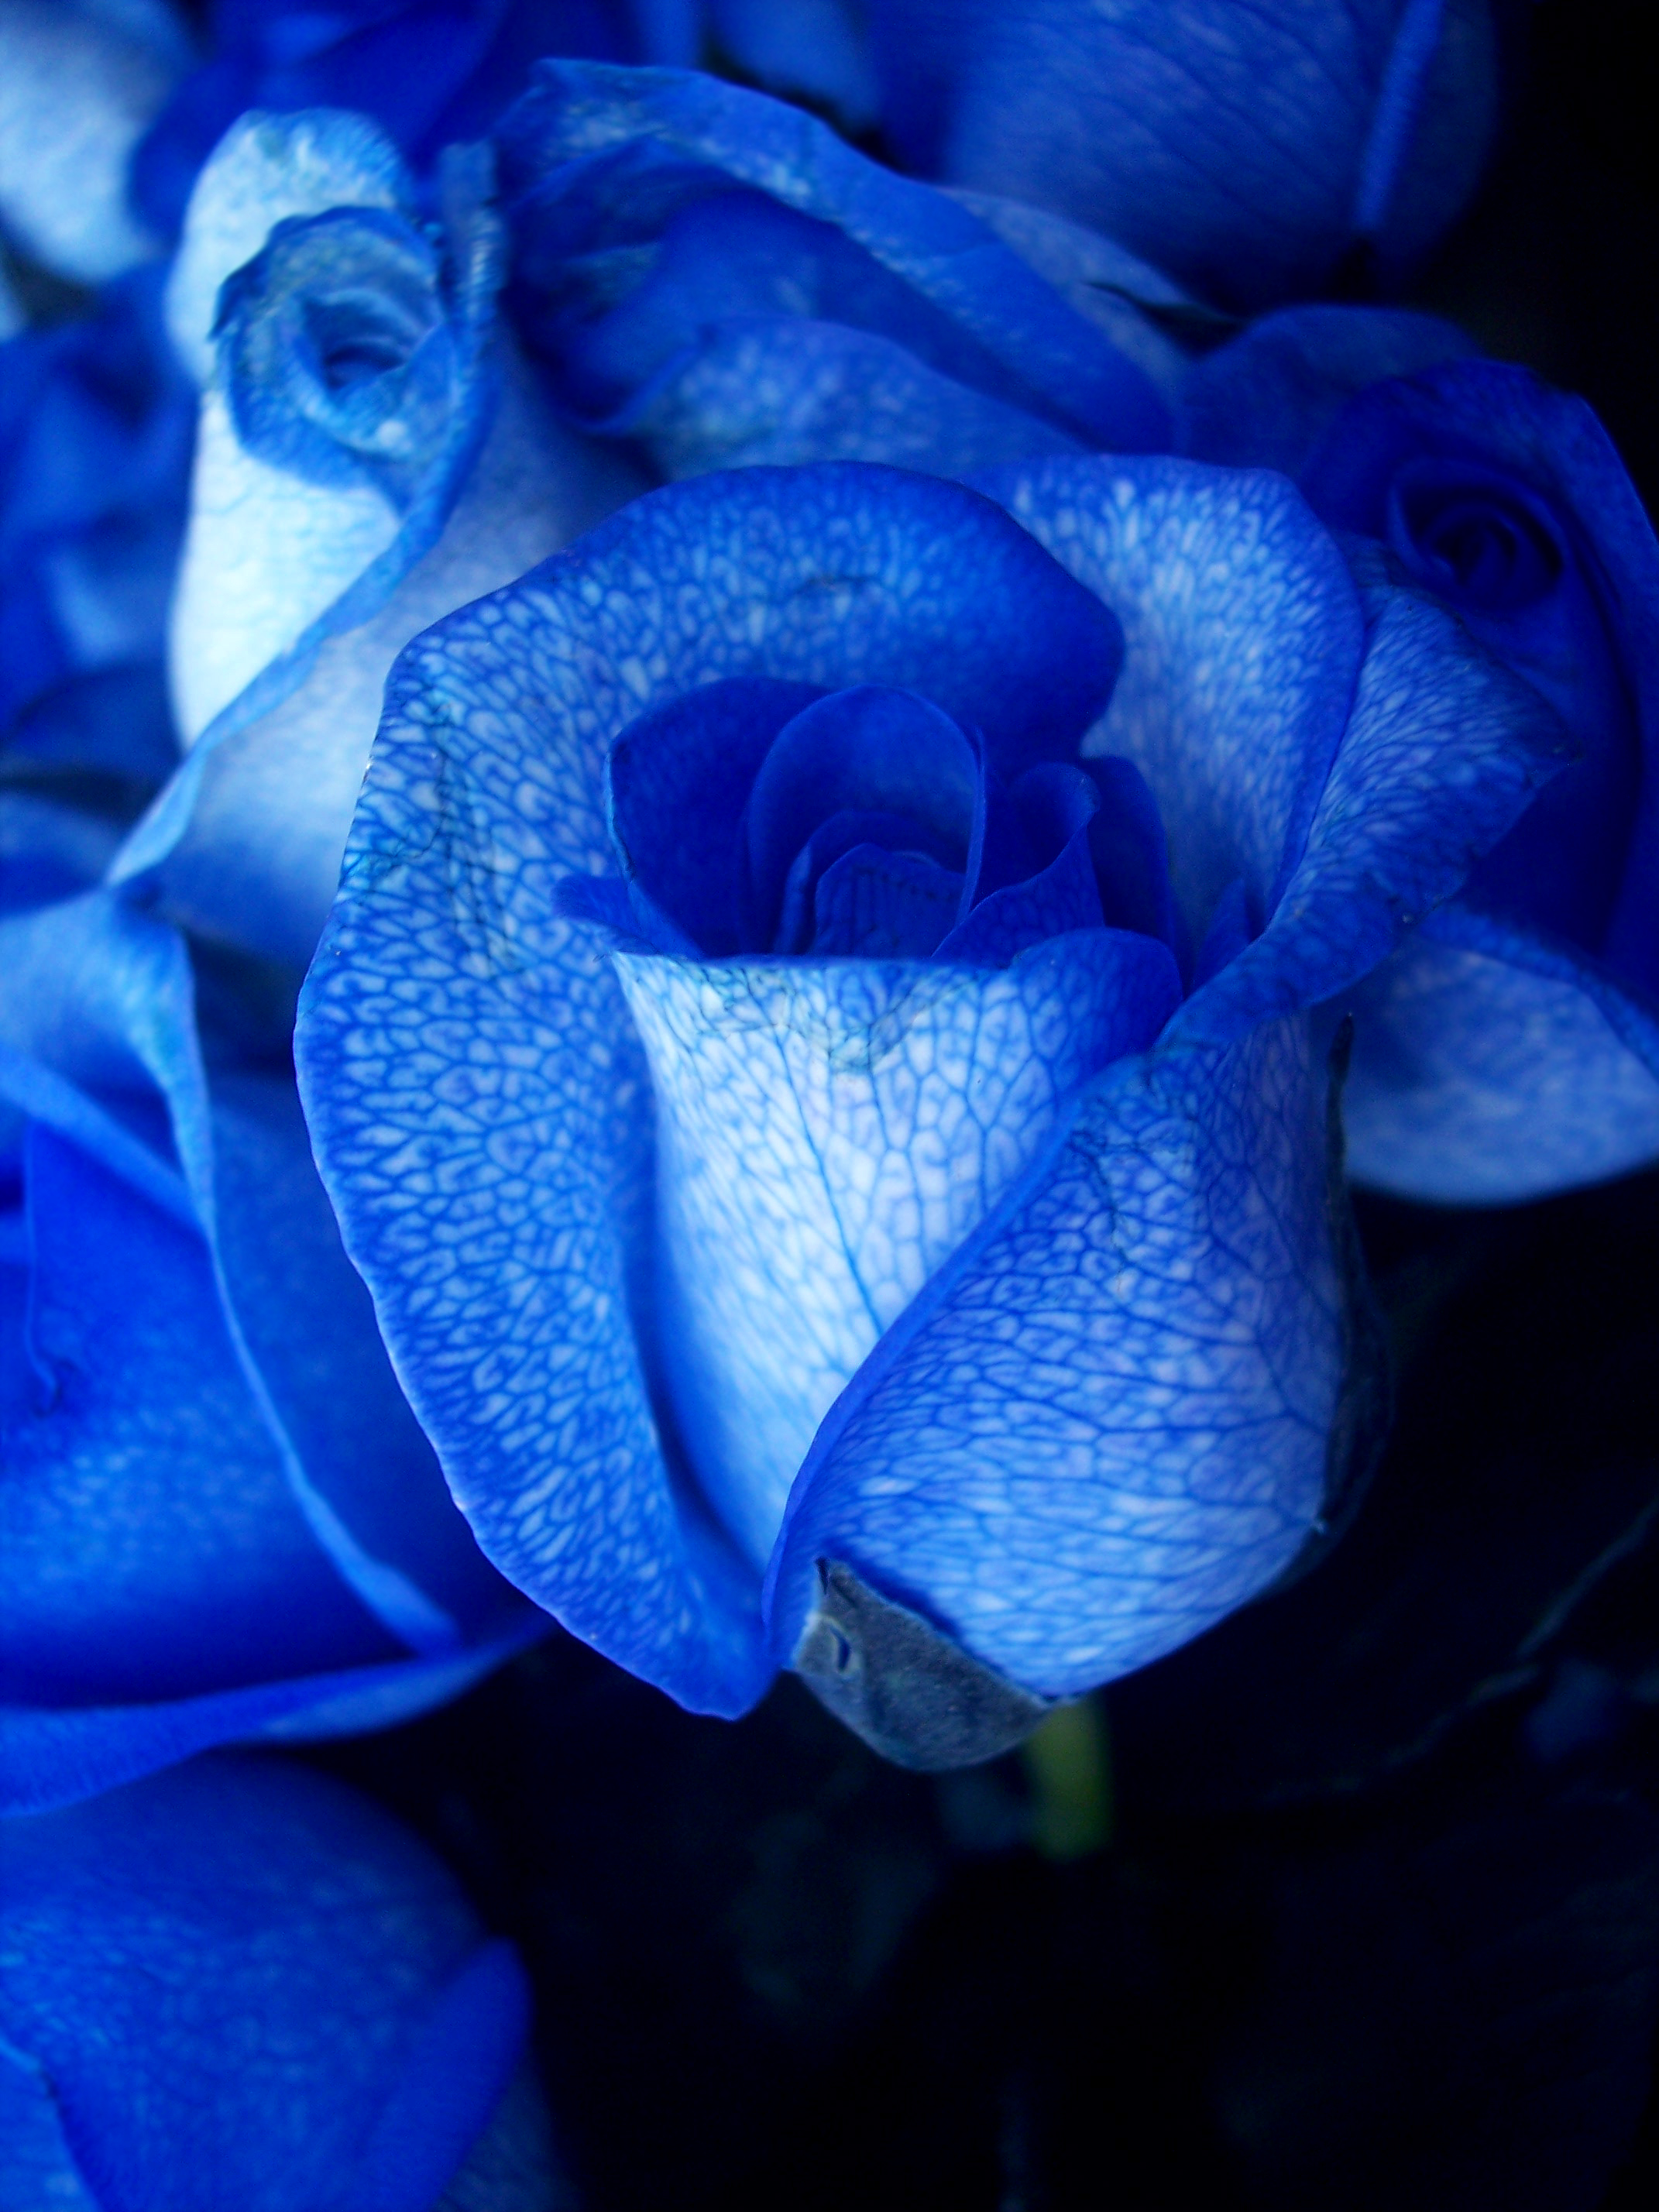 Nếu bạn đang tìm kiếm một ảnh hoa đẹp chất lượng hoặc thậm chí là tìm kiếm hình nền hoa hồng xanh đẹp nhất, hãy thử tải xuống bộ sưu tập ảnh hoa đầy màu sắc và sống động. Những bức ảnh này sẽ khiến bạn thích thú và cực kỳ phù hợp để trang trí màn hình.